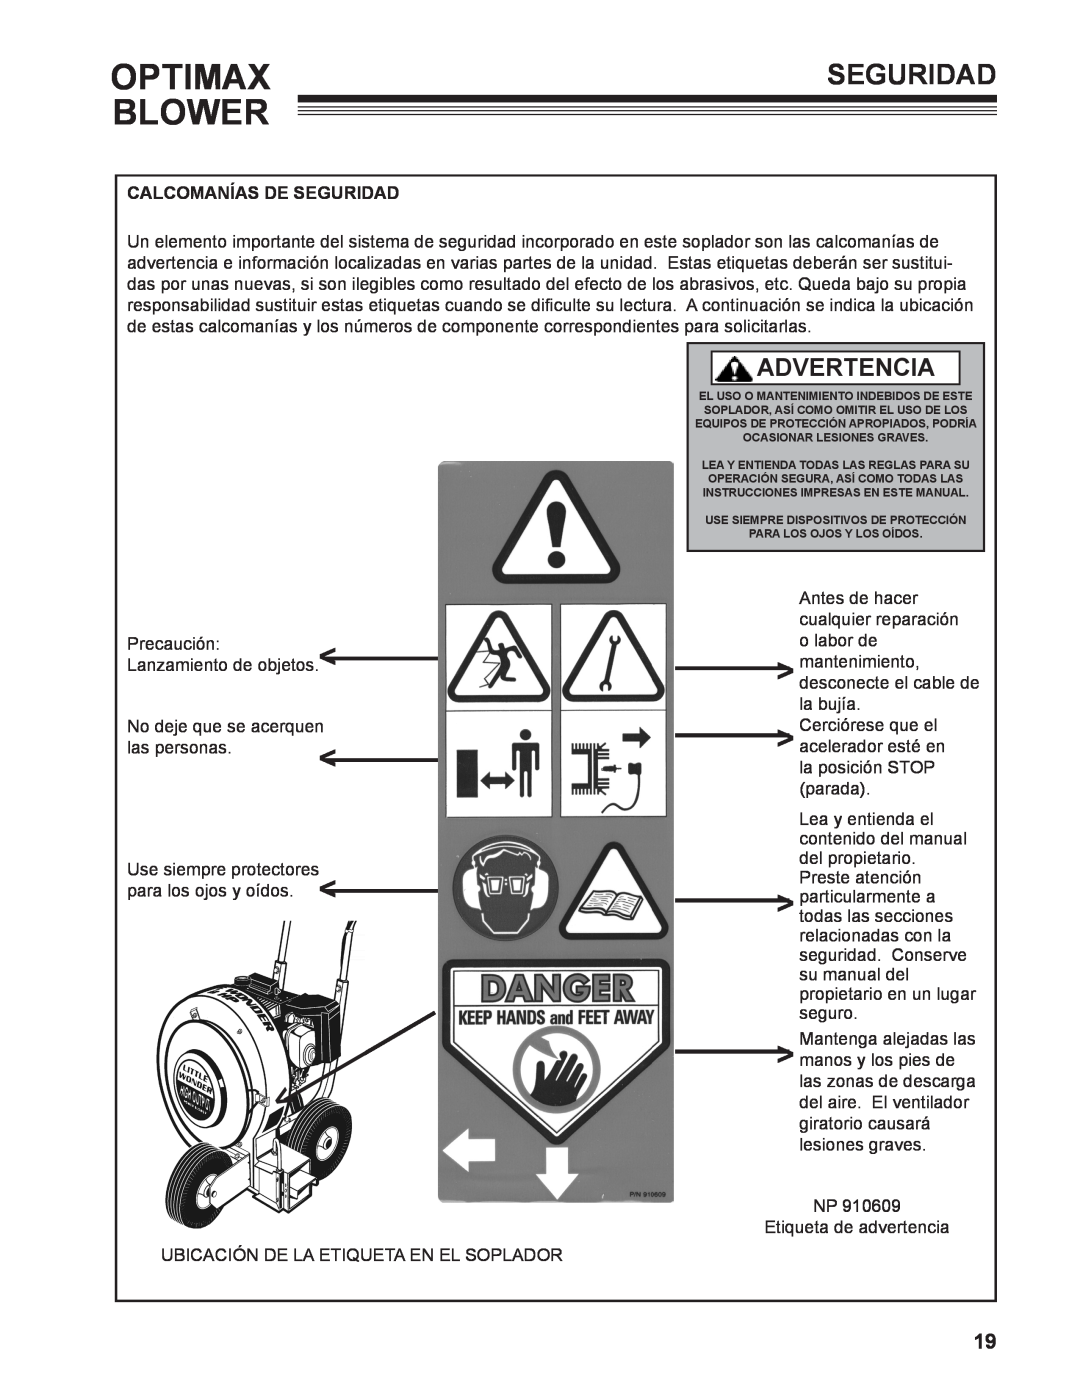 Little Wonder 9131-00-01 technical manual Optimax Blower, Advertencia, Calcomanías De Seguridad 